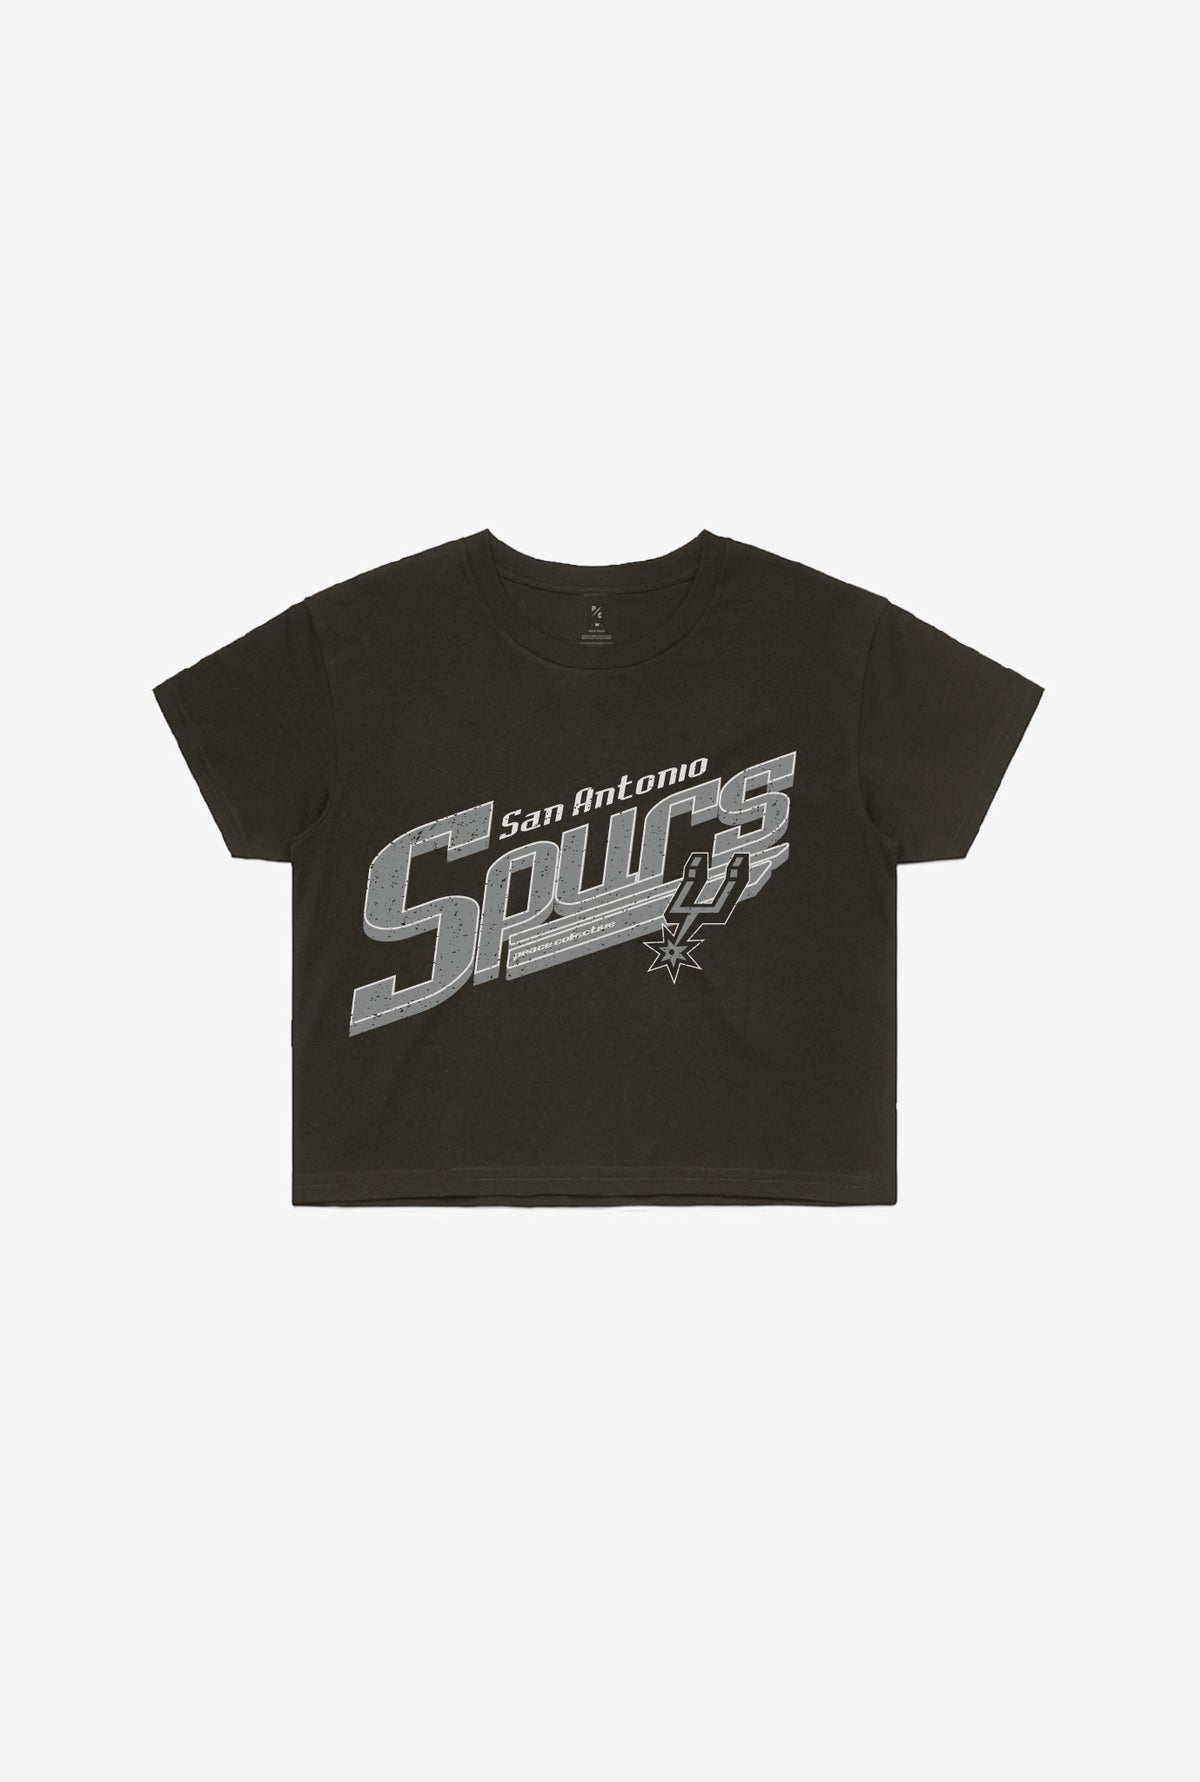 San Antonio Spurs Pigment Dye Cropped T-Shirt - Black